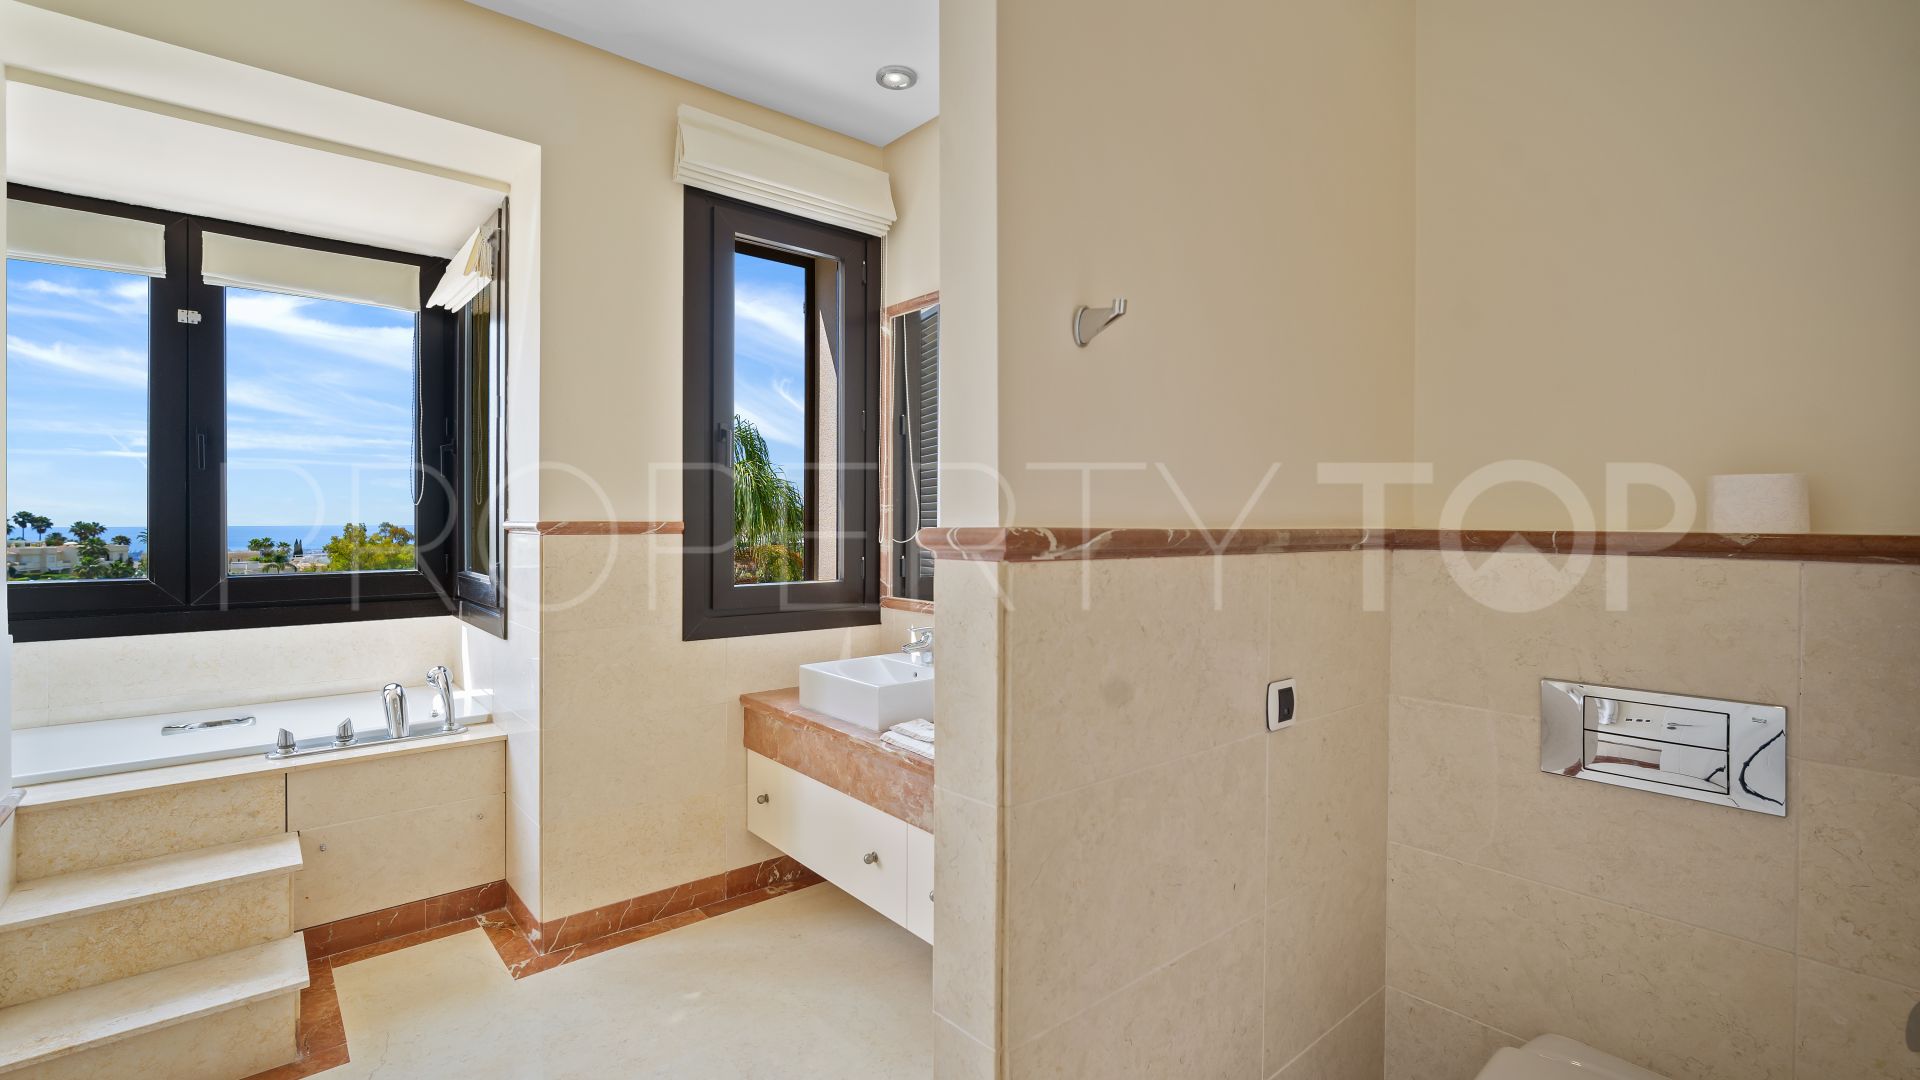 5 bedrooms La Quinta villa for sale